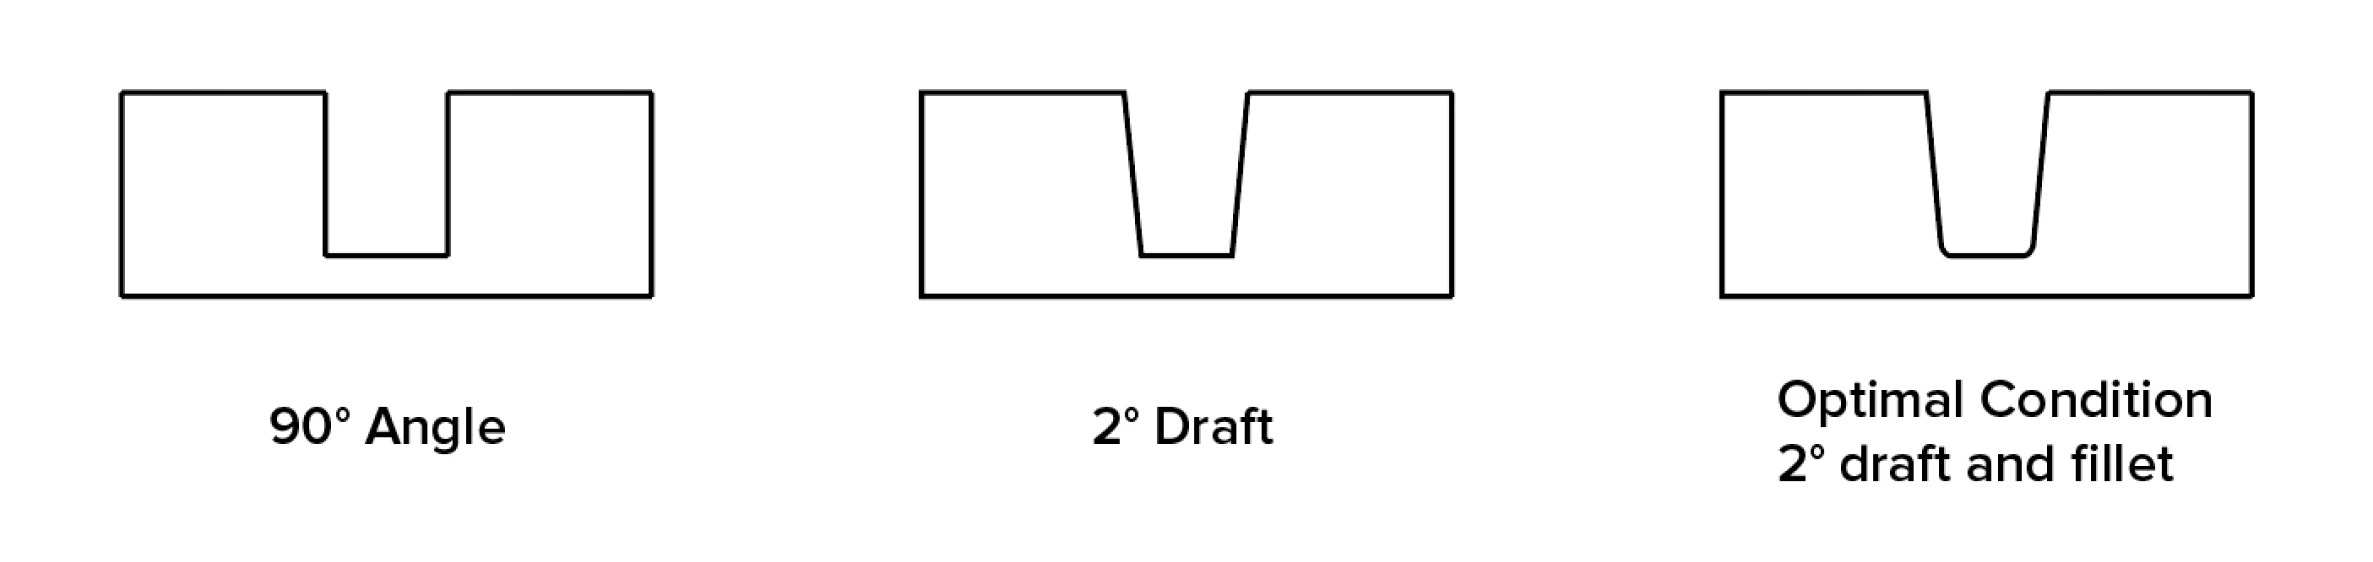 Draft-Angle